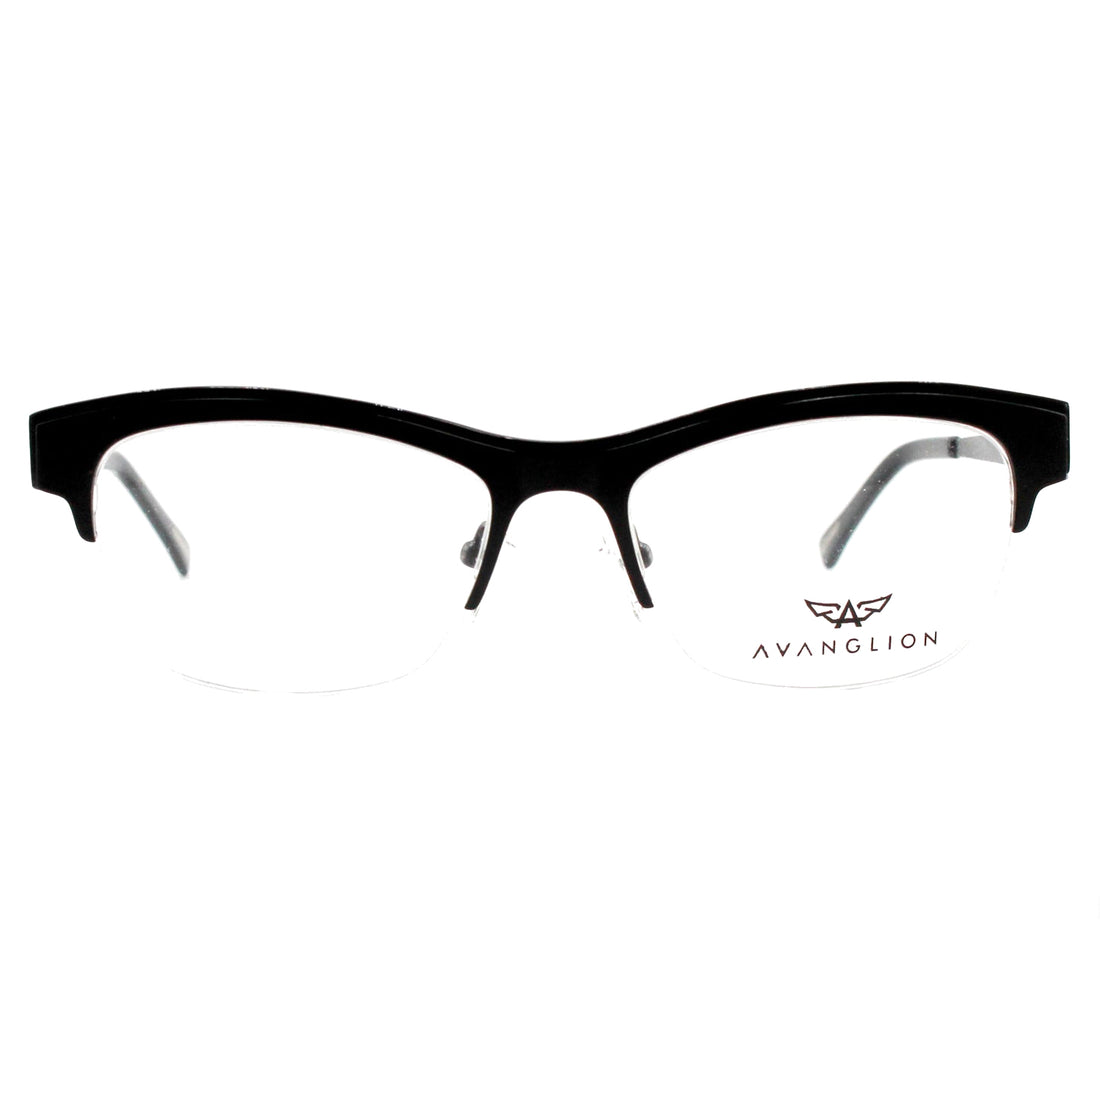 Montatura per occhiali Avanglion | Modello AV11390